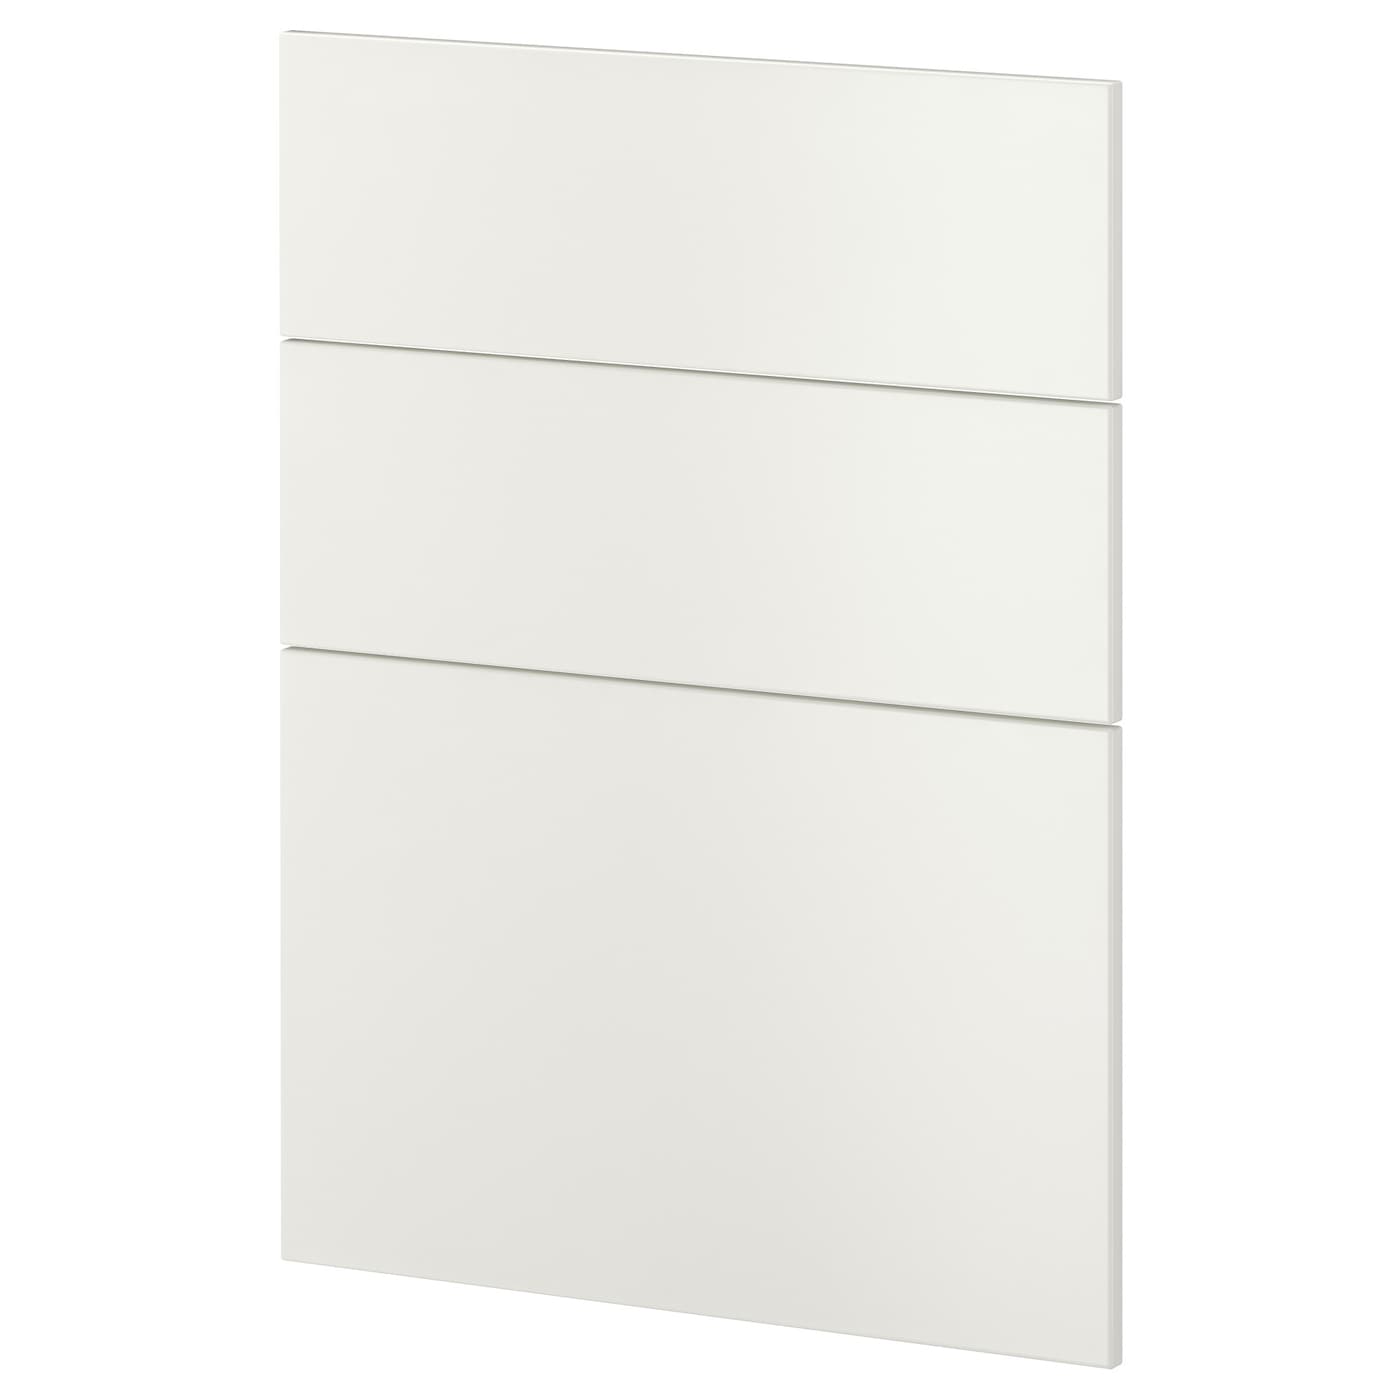 Накладная панель для посудомоечной машины - IKEA METOD, 80х60 см, белый, МЕТОД ИКЕА